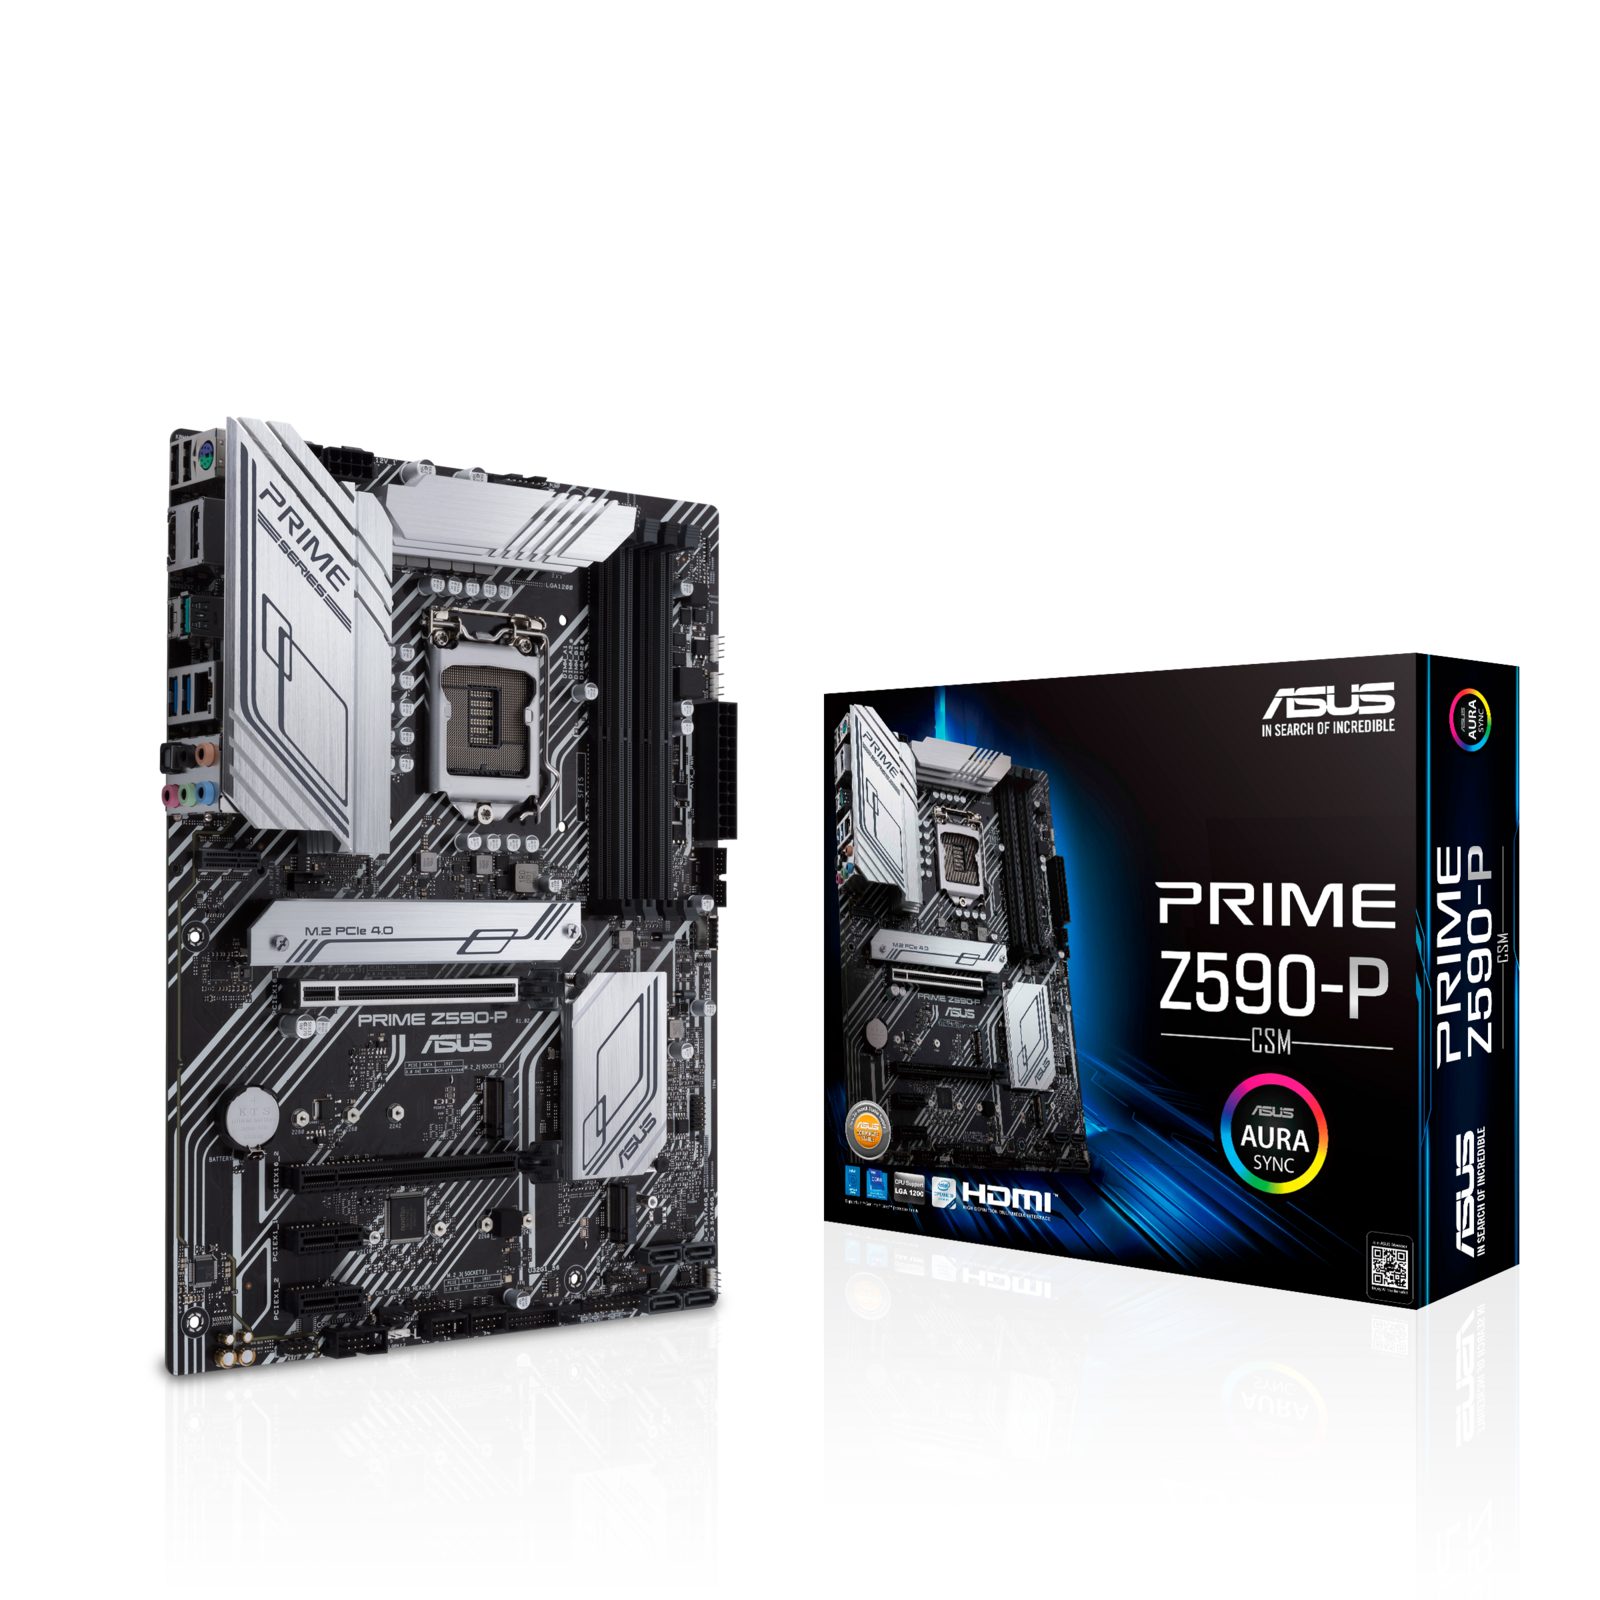 ASUS PRIME Z590-P/CSM Intel Z590 (LGA 1200) ATX motherboard PCIe 4.0 3xM.2 11 DrMOS Power Stages, HDMI, DP, SATA, 2.5 Gb Ethernet, USB 3.2 USB-C, RGB